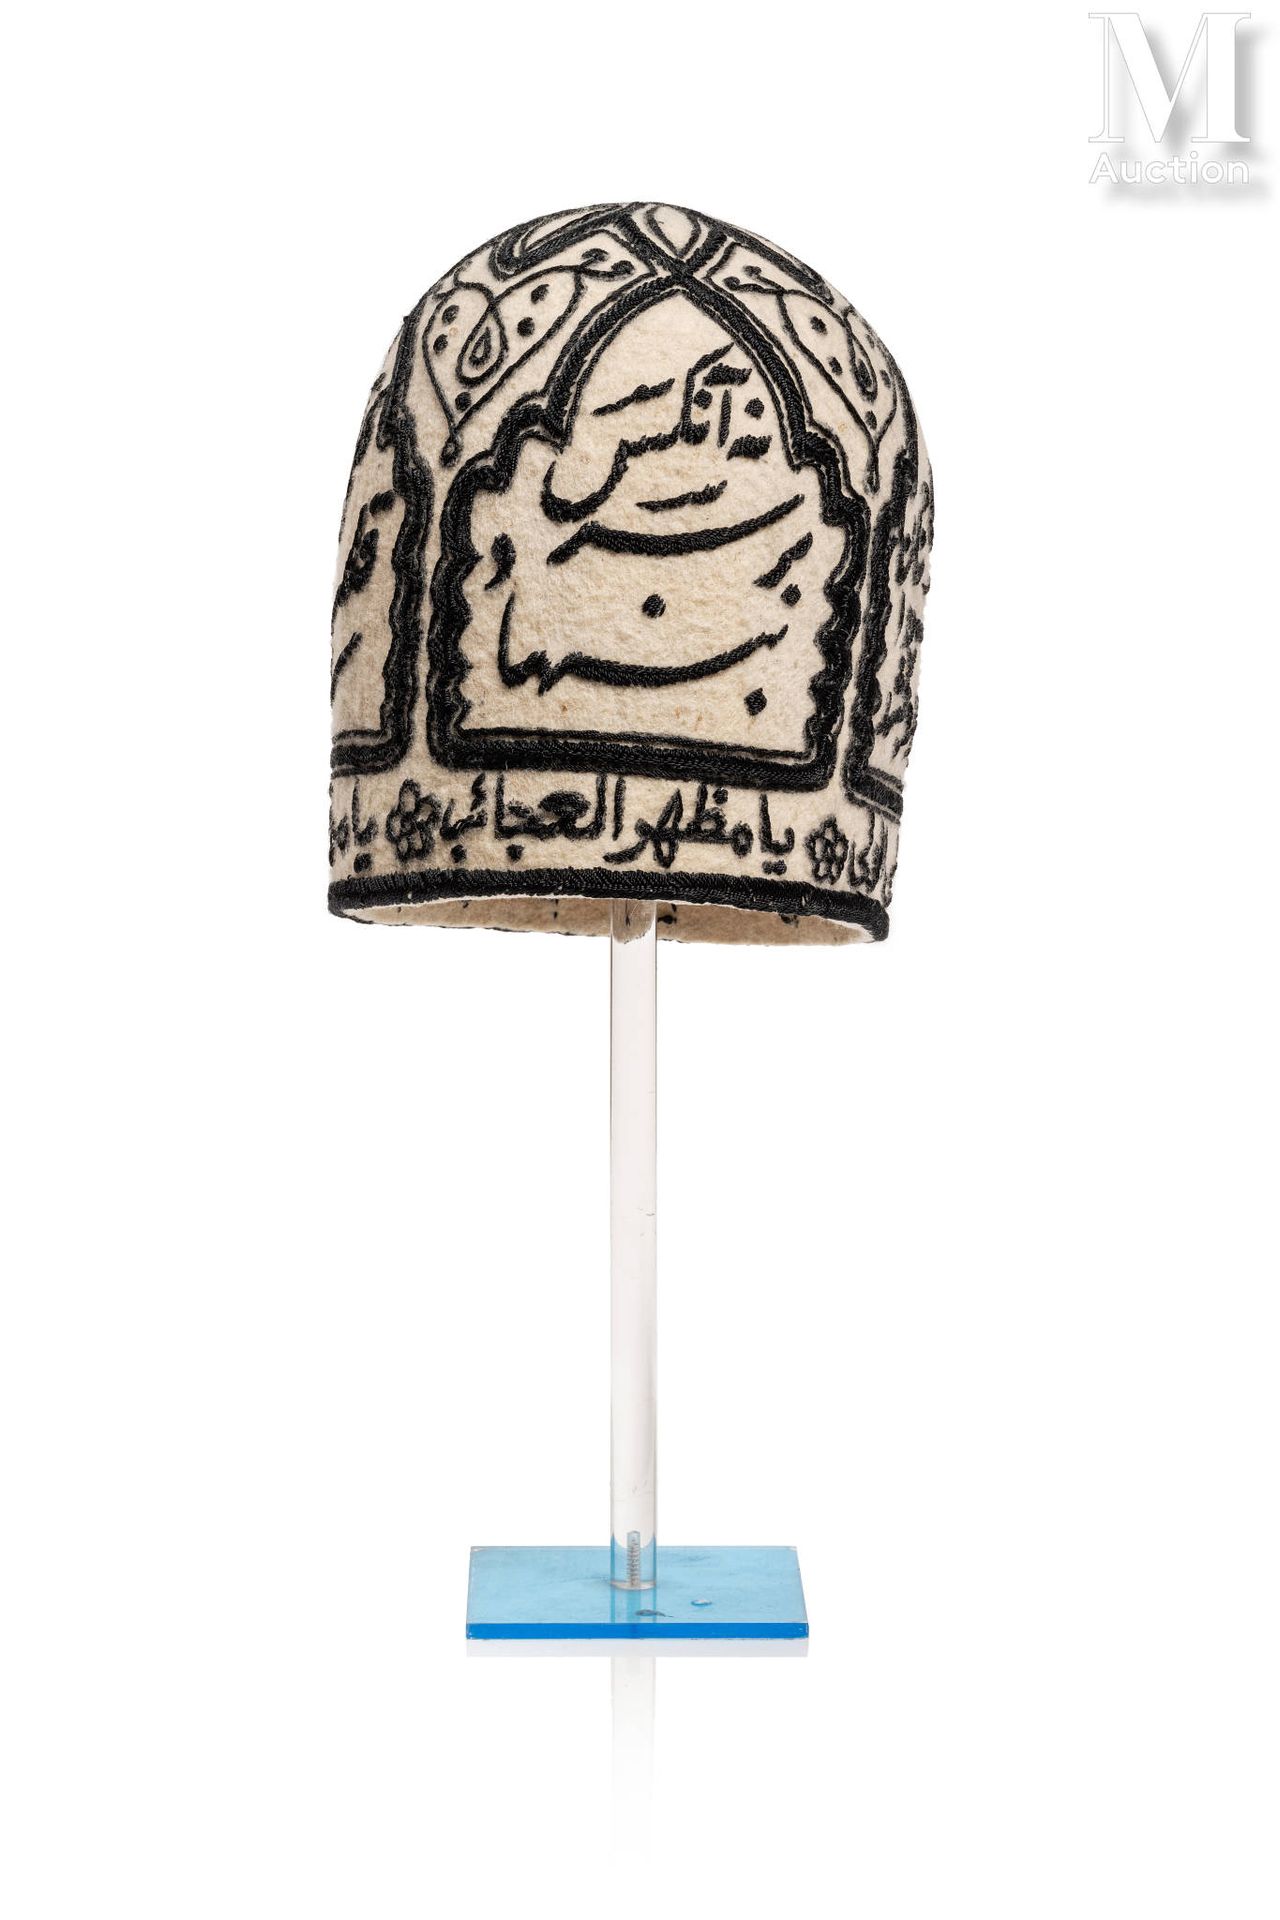 Bonnet de Derviche Irán

Bolsa de lana bordada con fieltro negro, decorada con c&hellip;